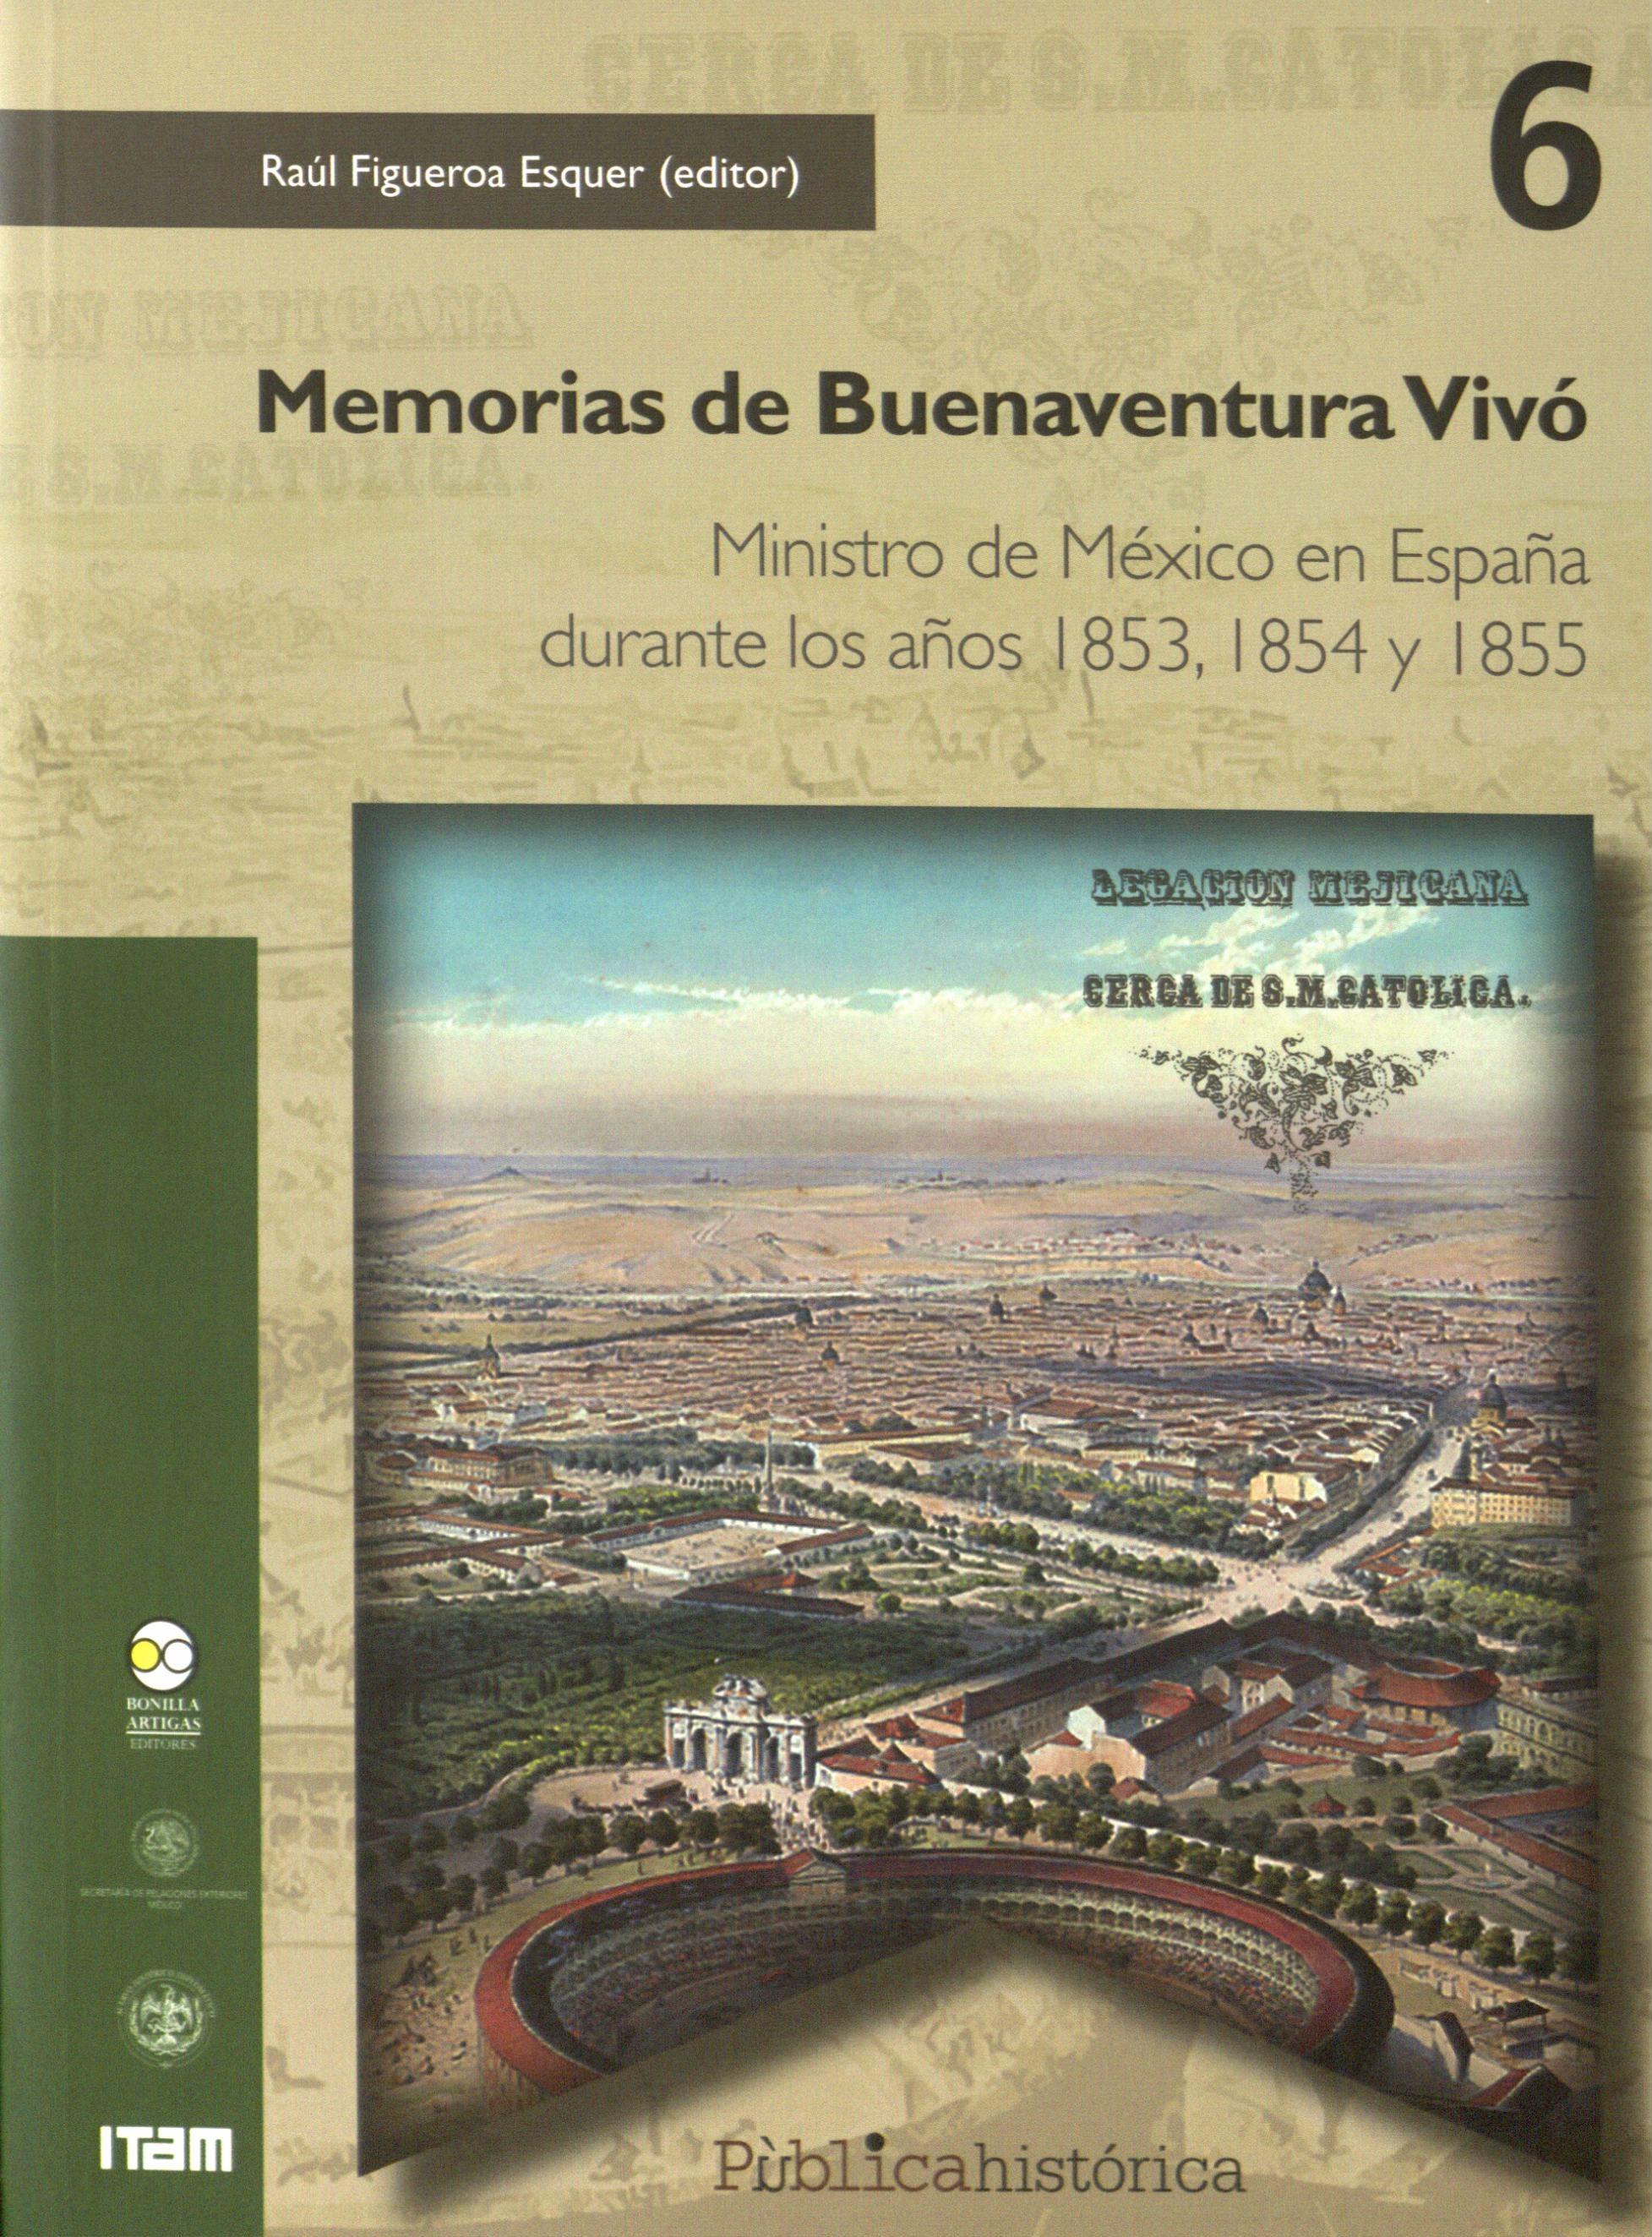 Memorias de Buenaventura Vivó "Ministro de México en España durante los años 1853, 1854 y 1855". 